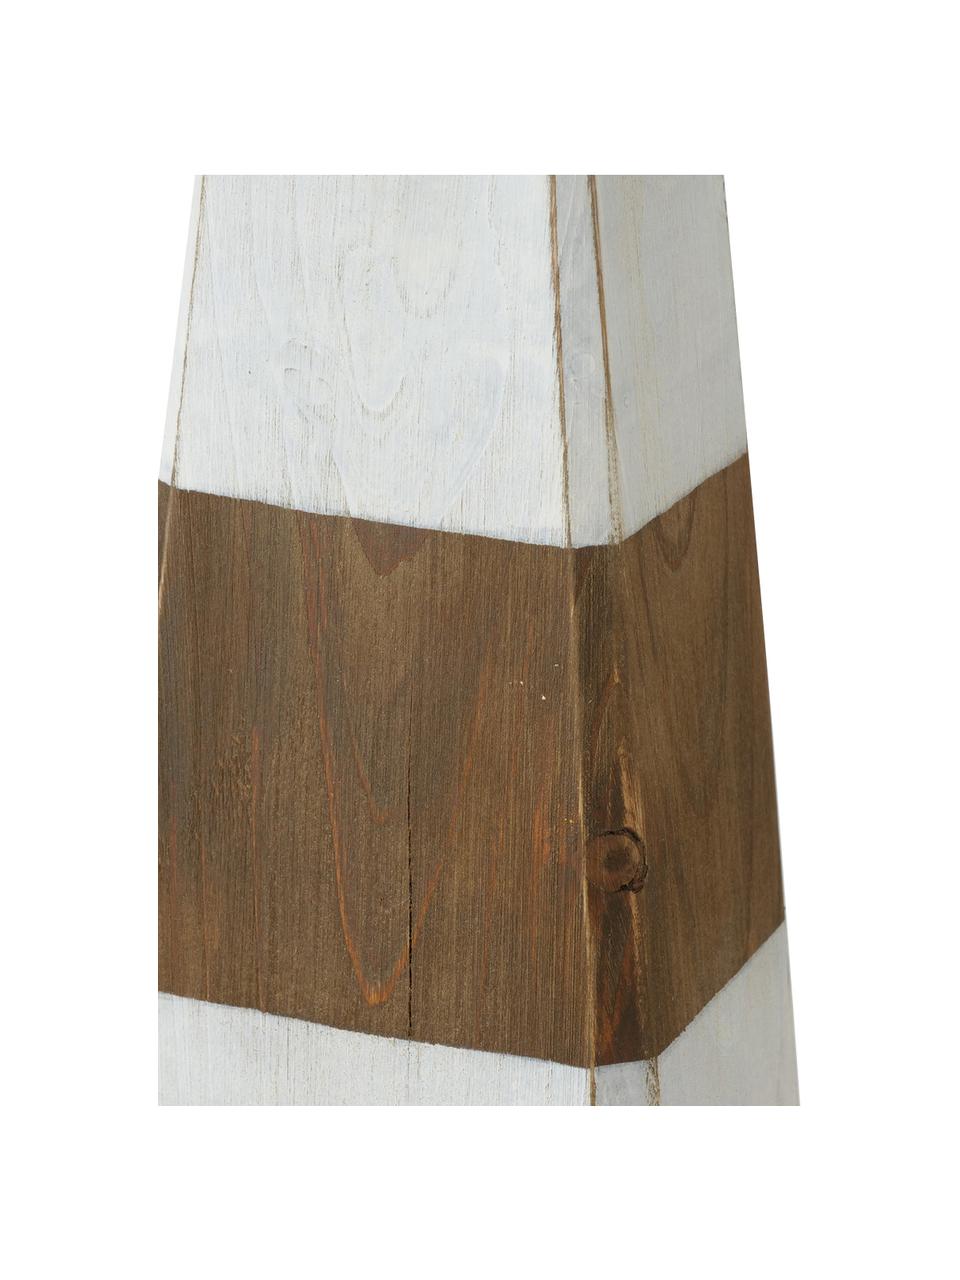 Sada dekorací Melino, 2 díly, Smrkové dřevo, Hnědá, bílá, Ø 9 cm, V 36 cm